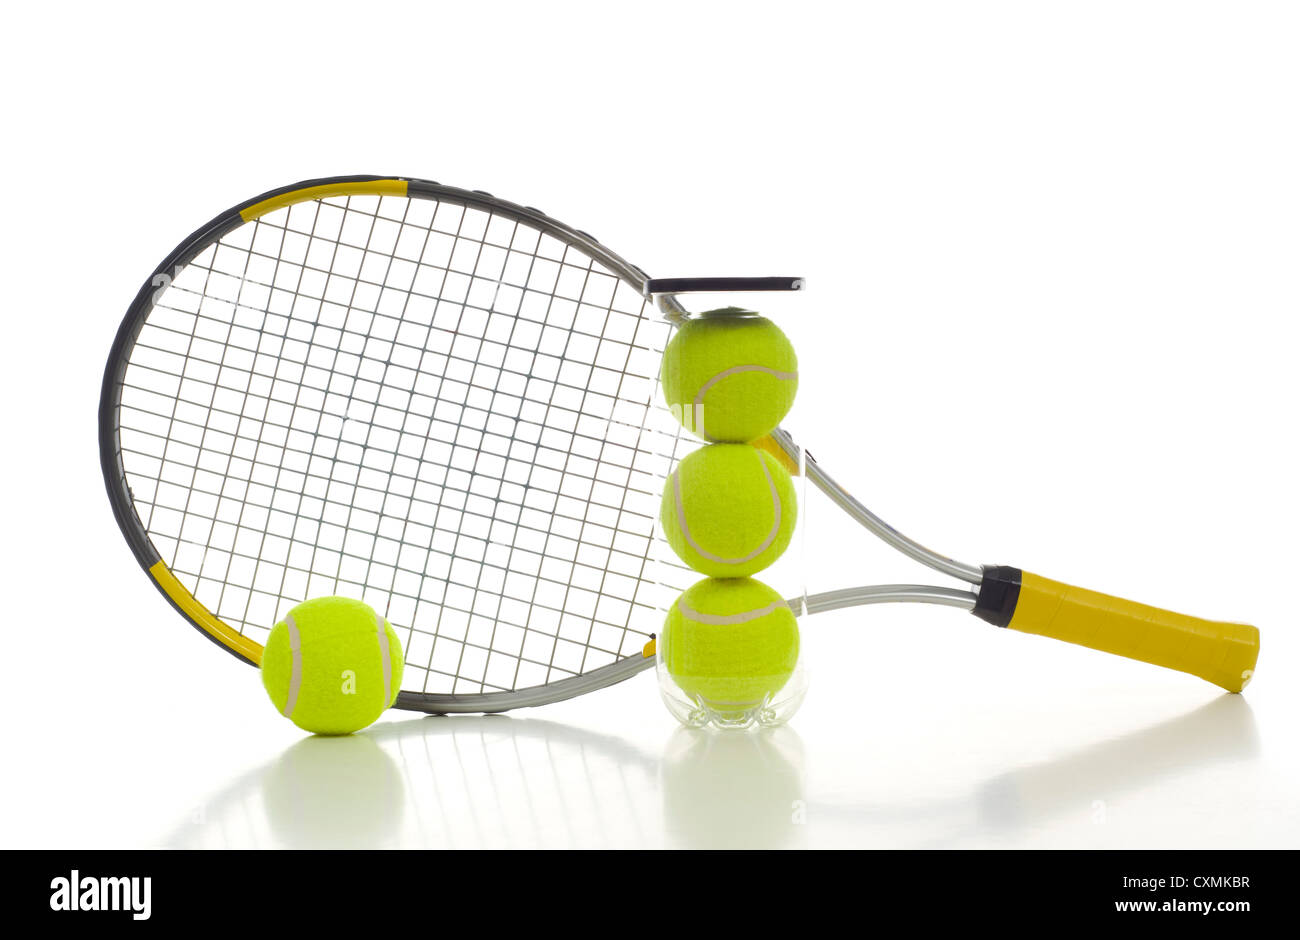 Nouvelle balle de tennis et une raquette de tennis sur fond blanc avec copie espace Banque D'Images